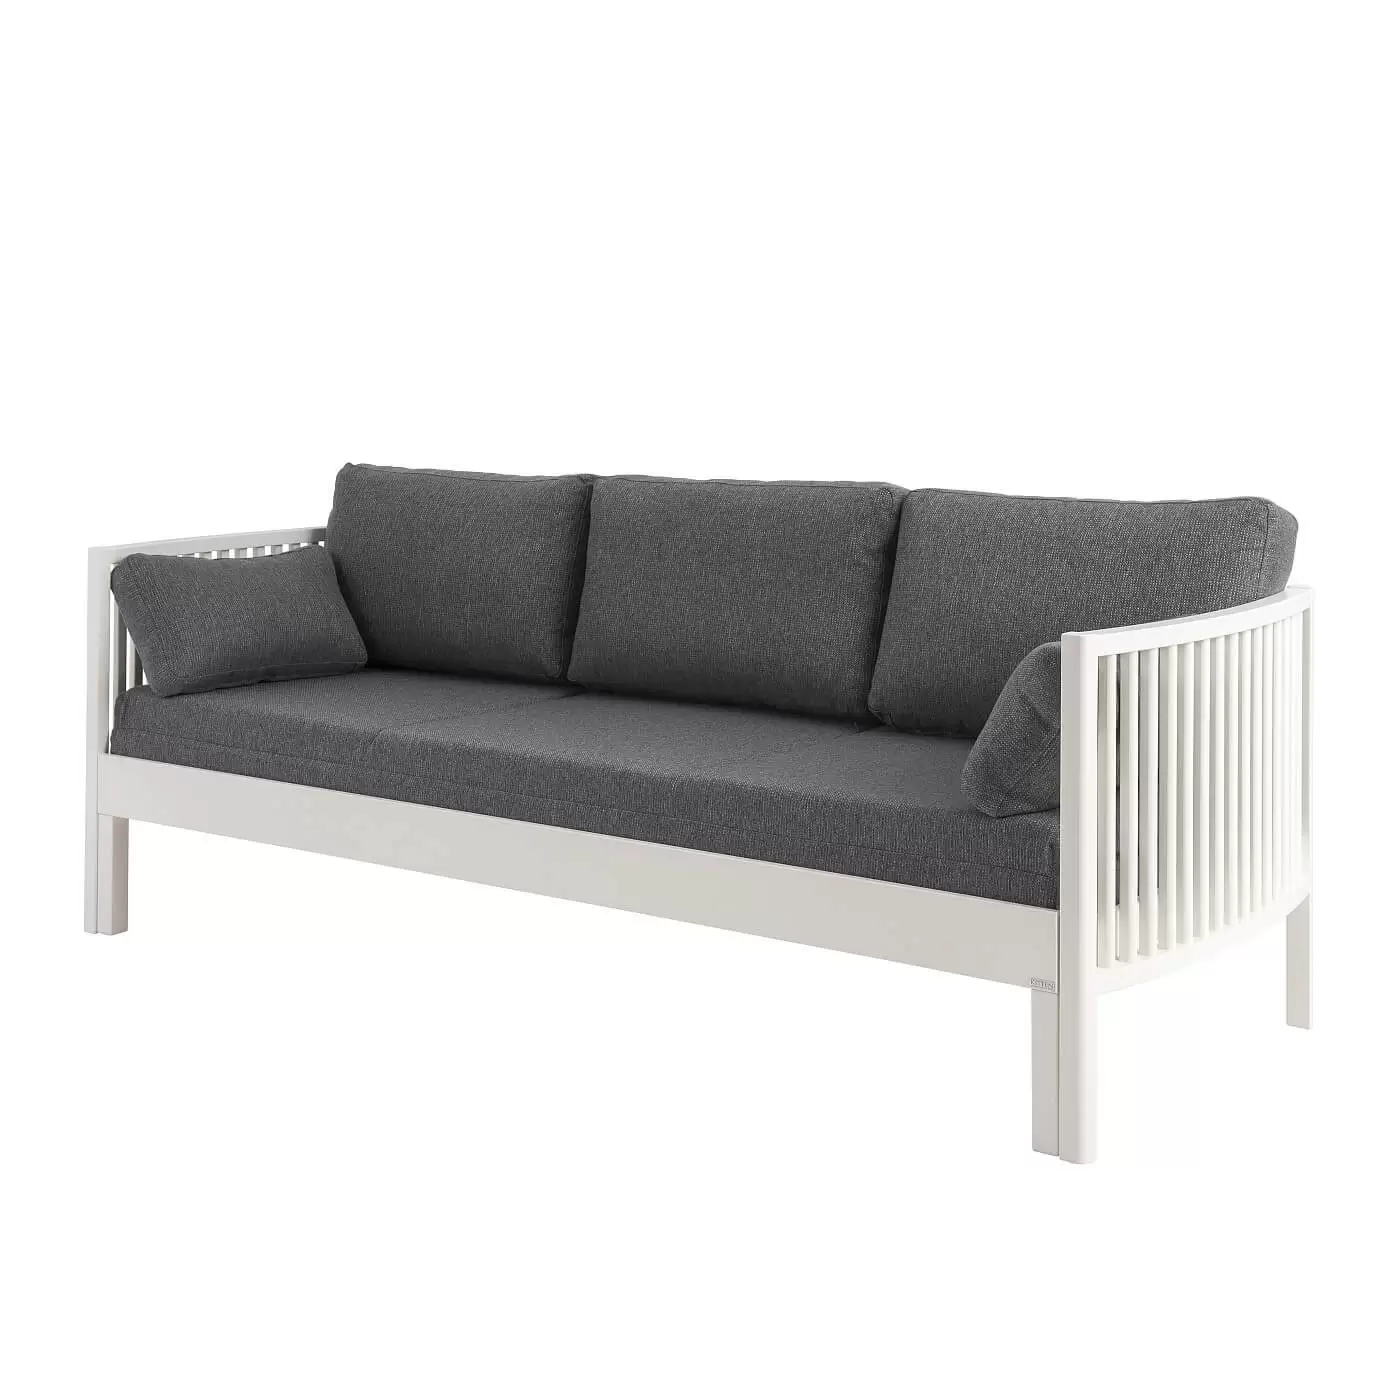 Sofa design AARRE rozkładana z litej brzozy lakierowanej na biało z beżowym materacem. Nowoczesne minimalistyczne skandynawskie wzornictwo